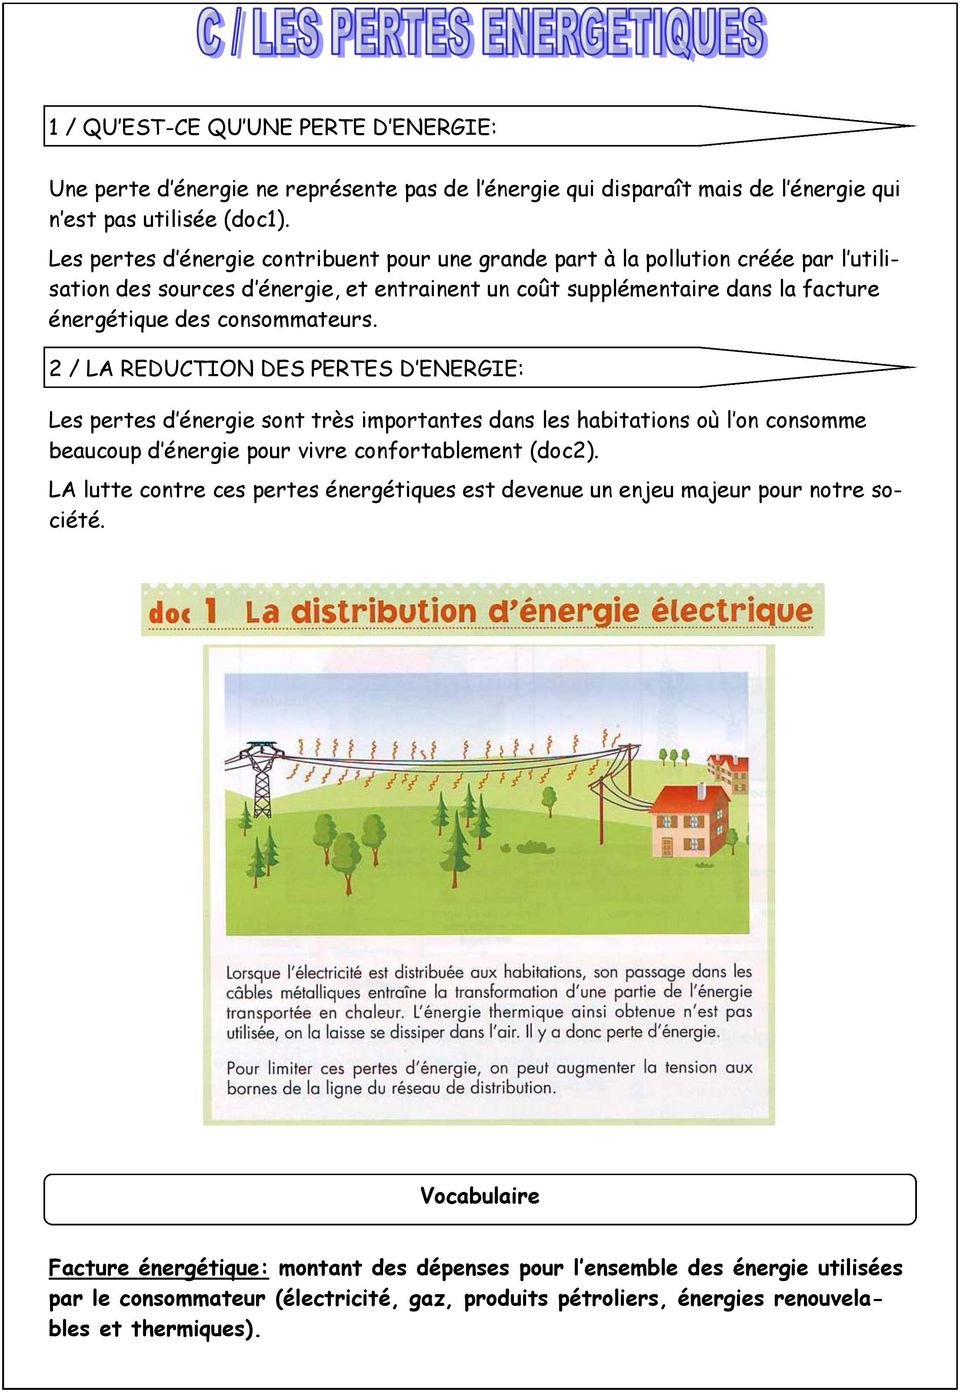 2 / LA REDUCTION DES PERTES D ENERGIE: Les pertes d énergie sont très importantes dans les habitations où l on consomme beaucoup d énergie pour vivre confortablement (doc2).